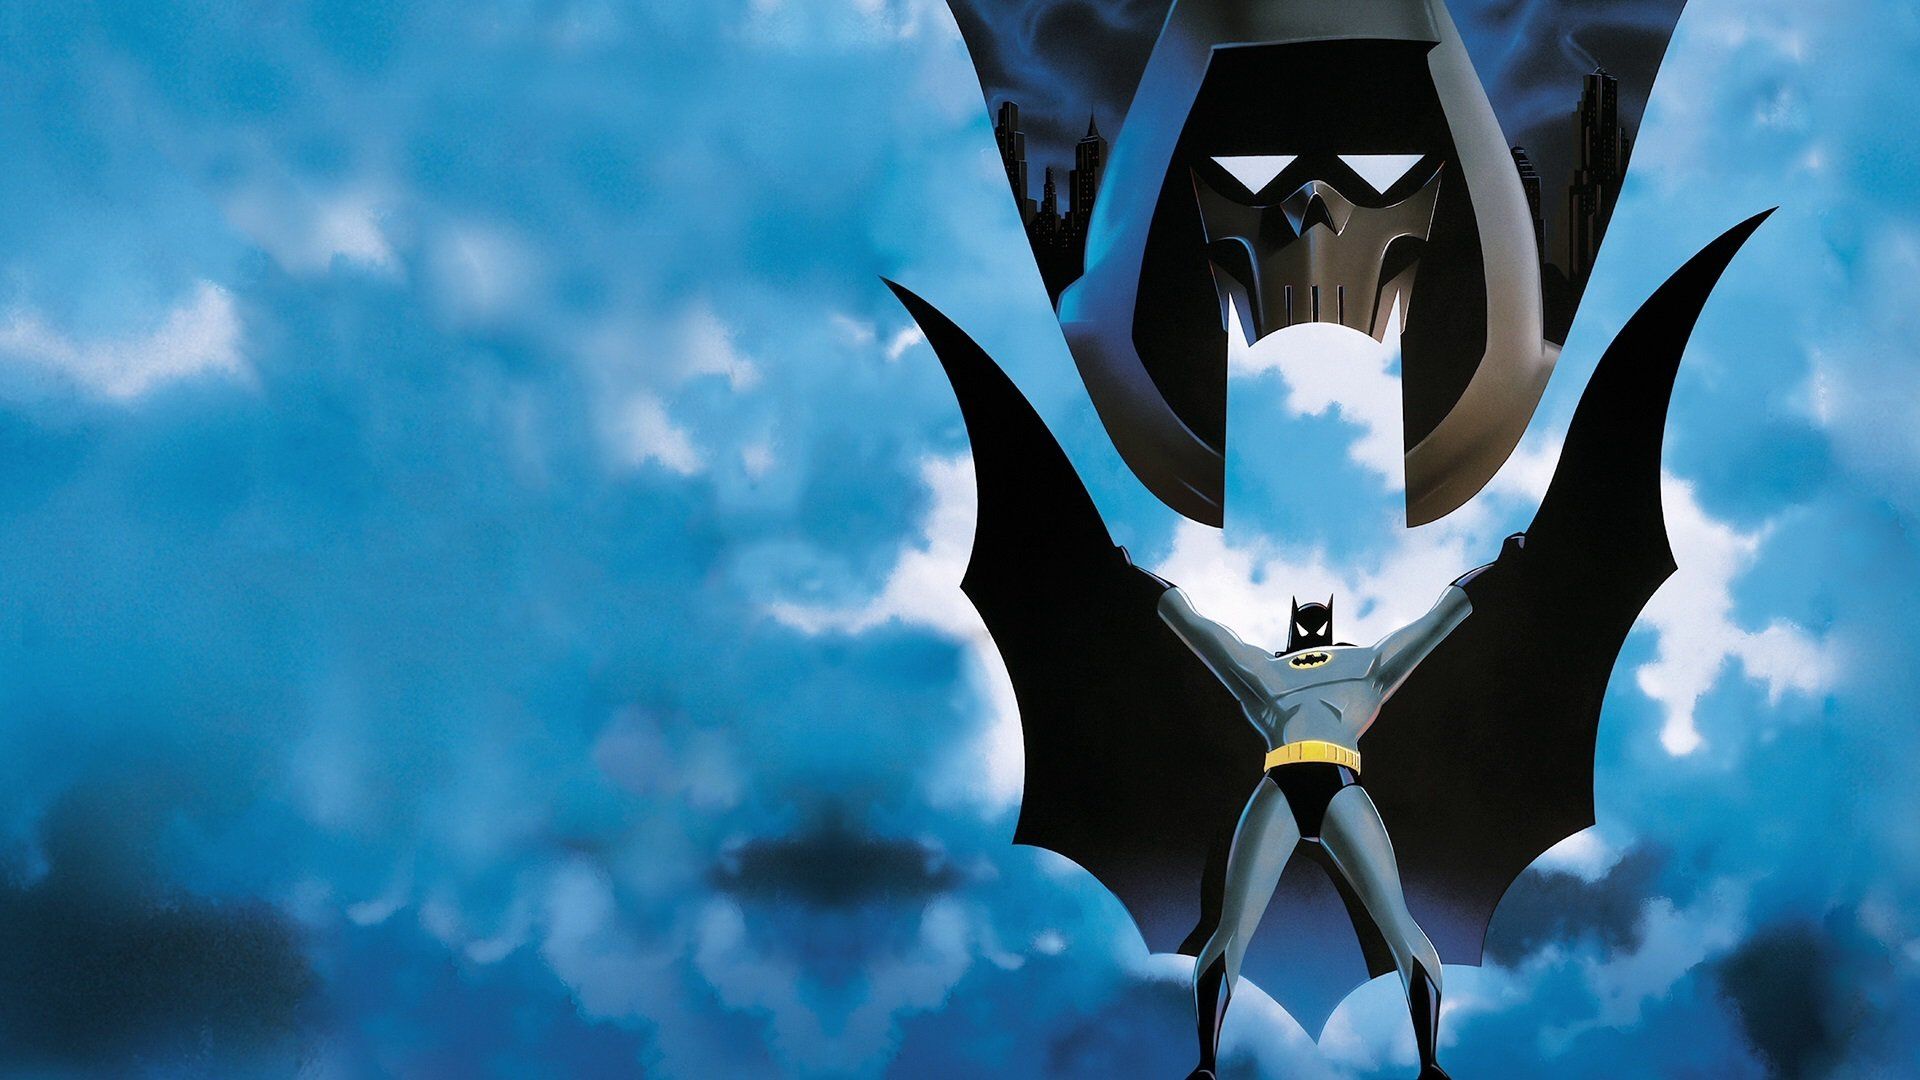 Batman: Mask of the Phantasm background